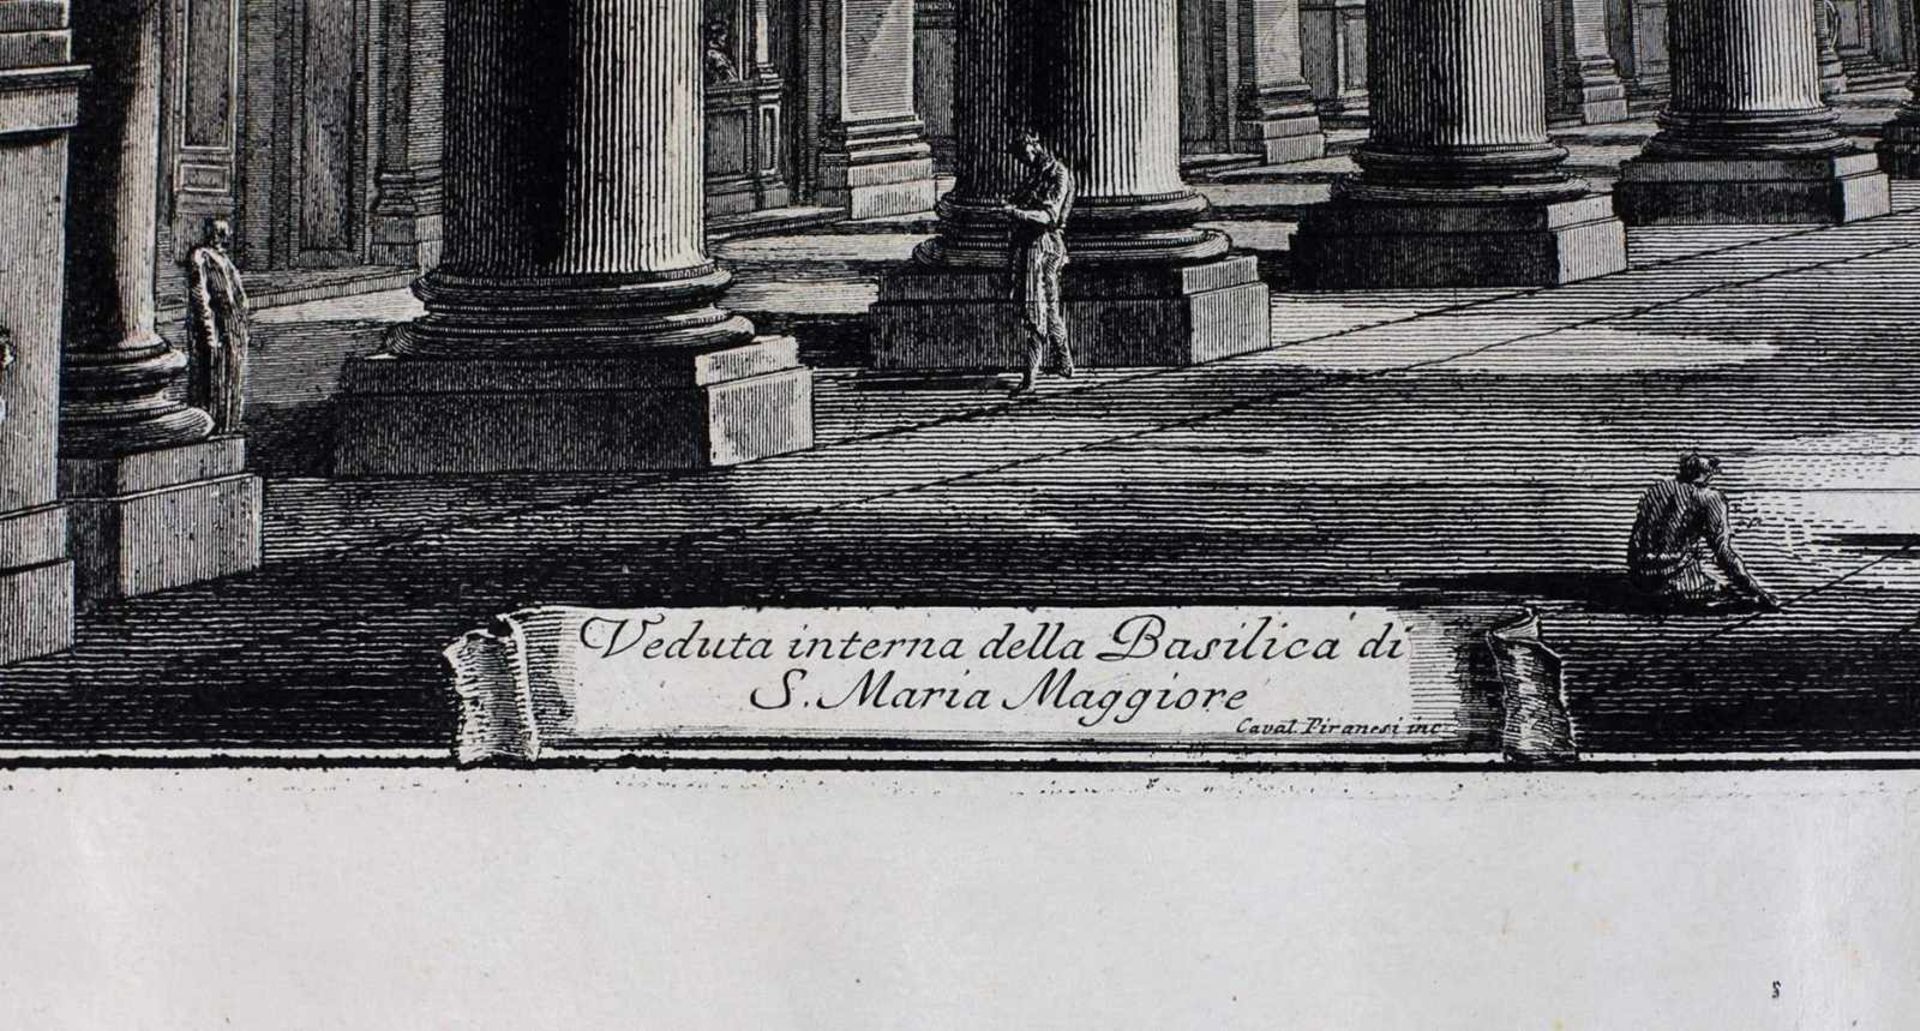 Piranesi, G.B. Veduta interna della Basilica di S. Maria Maggiore, Roma. Mid XVIII century. - Bild 2 aus 2